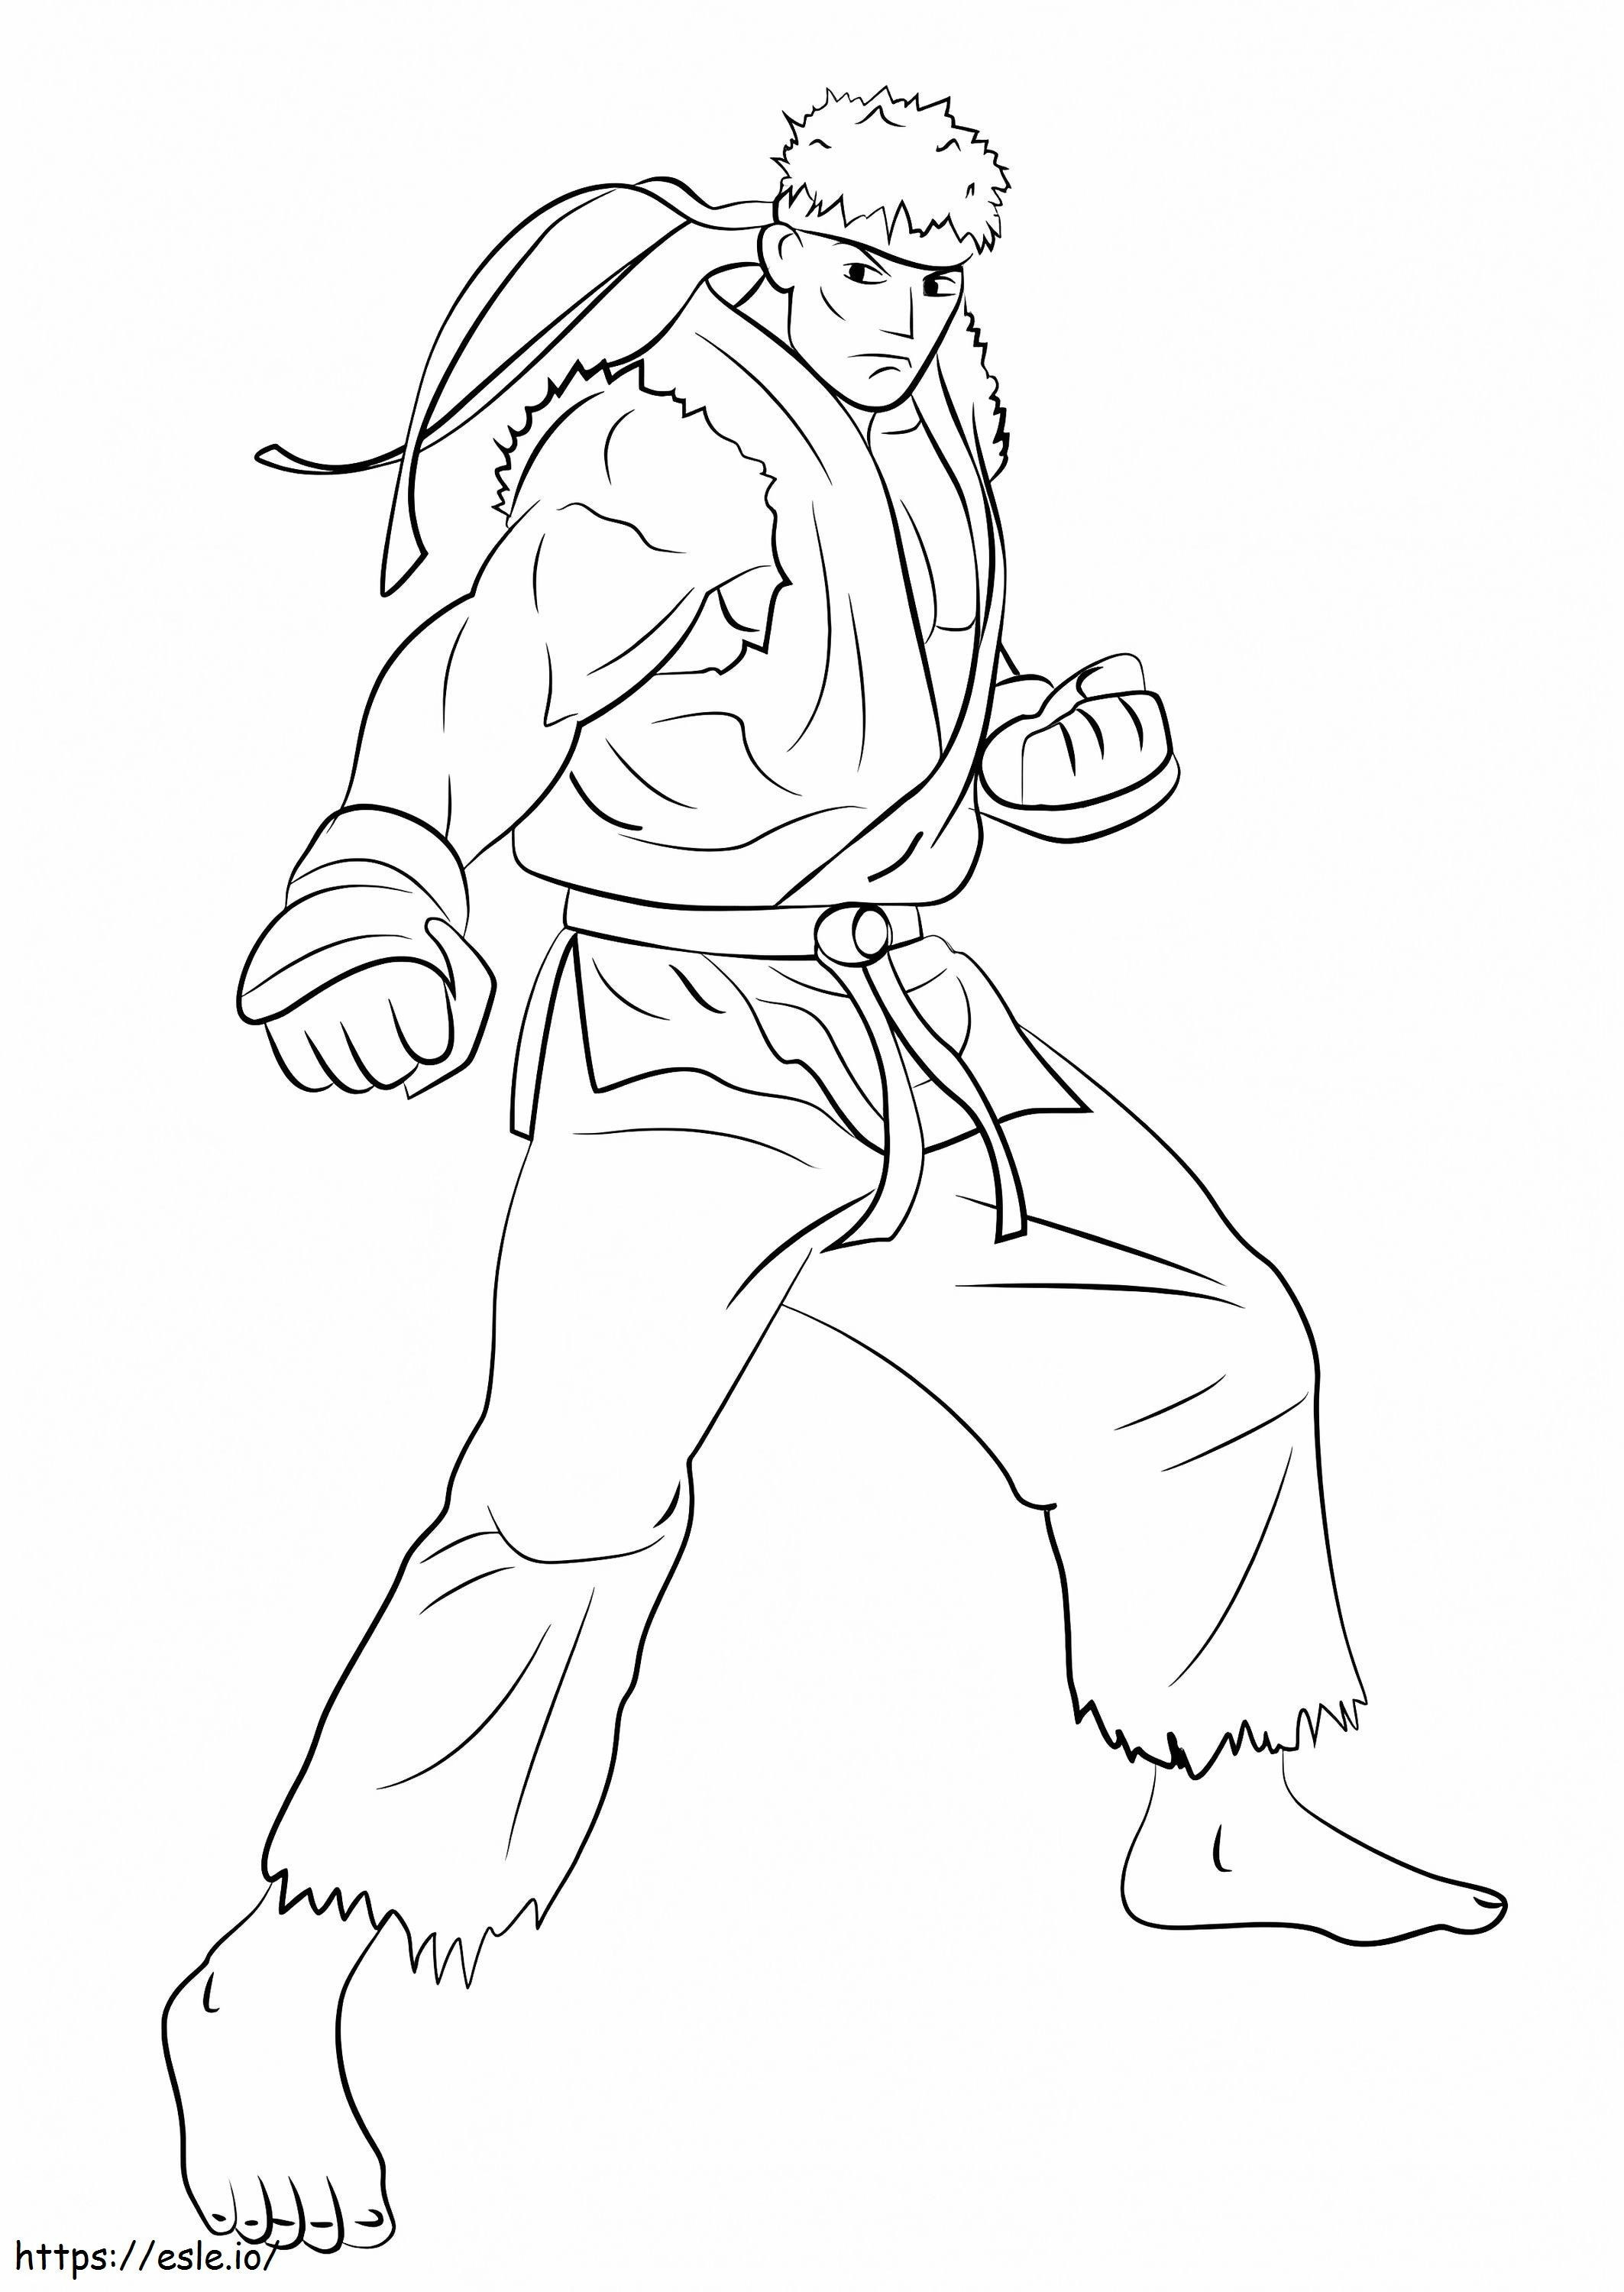 Ryu uit Street Fighter kleurplaat kleurplaat